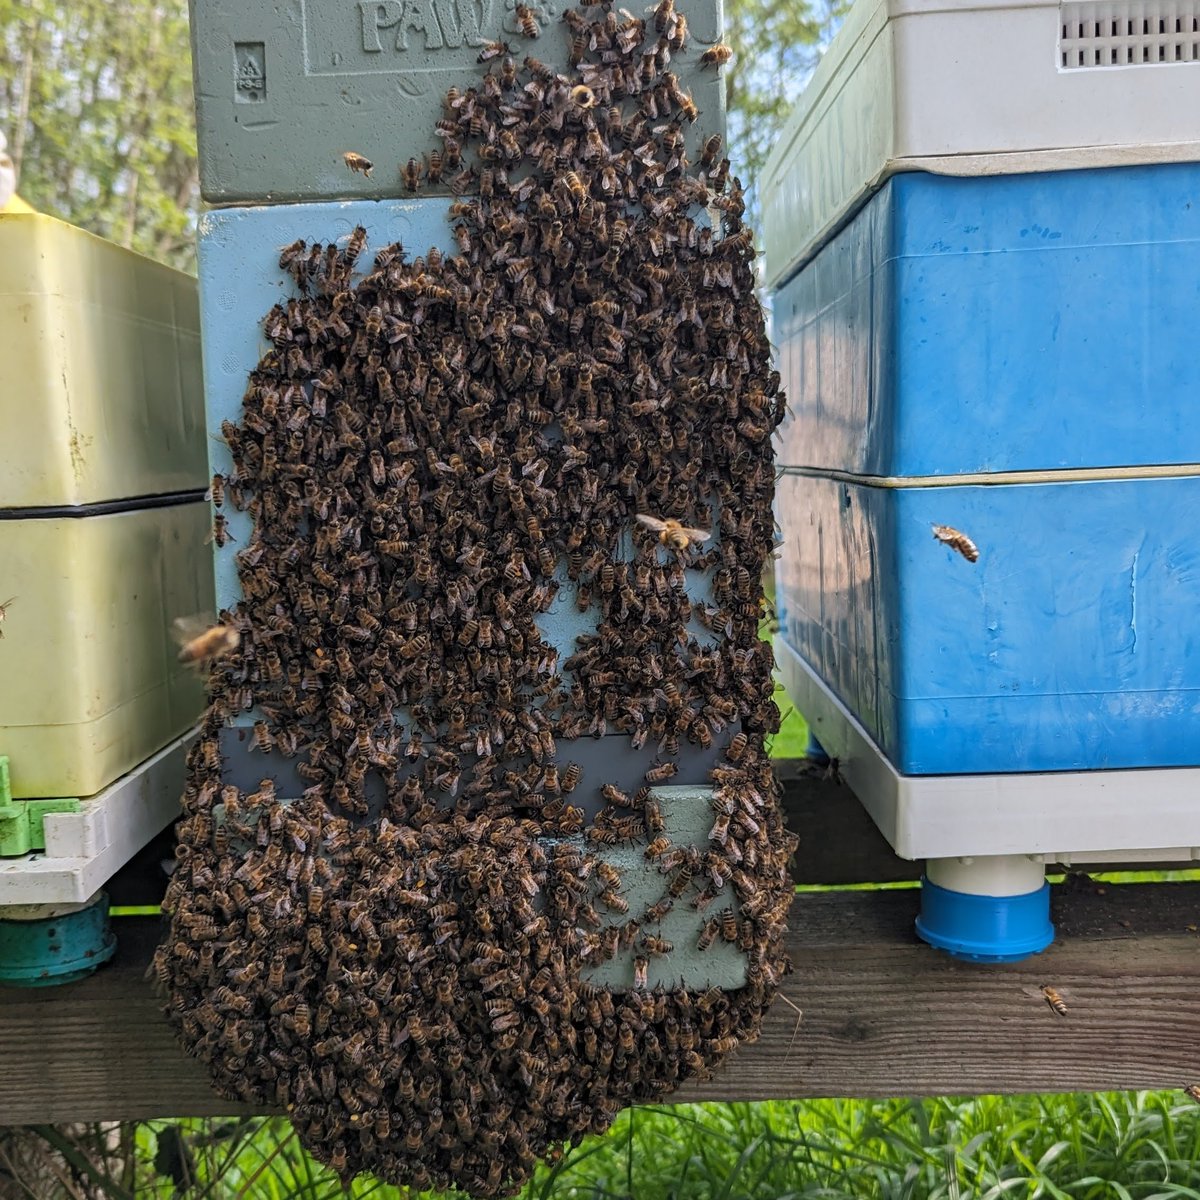 Not a swarm, just hot bees!
#NorfolkHoneyCo
#StewartSpinks
#BeekeepingForAll
#Beekeeping
#Honeybees
#BeeFarmer